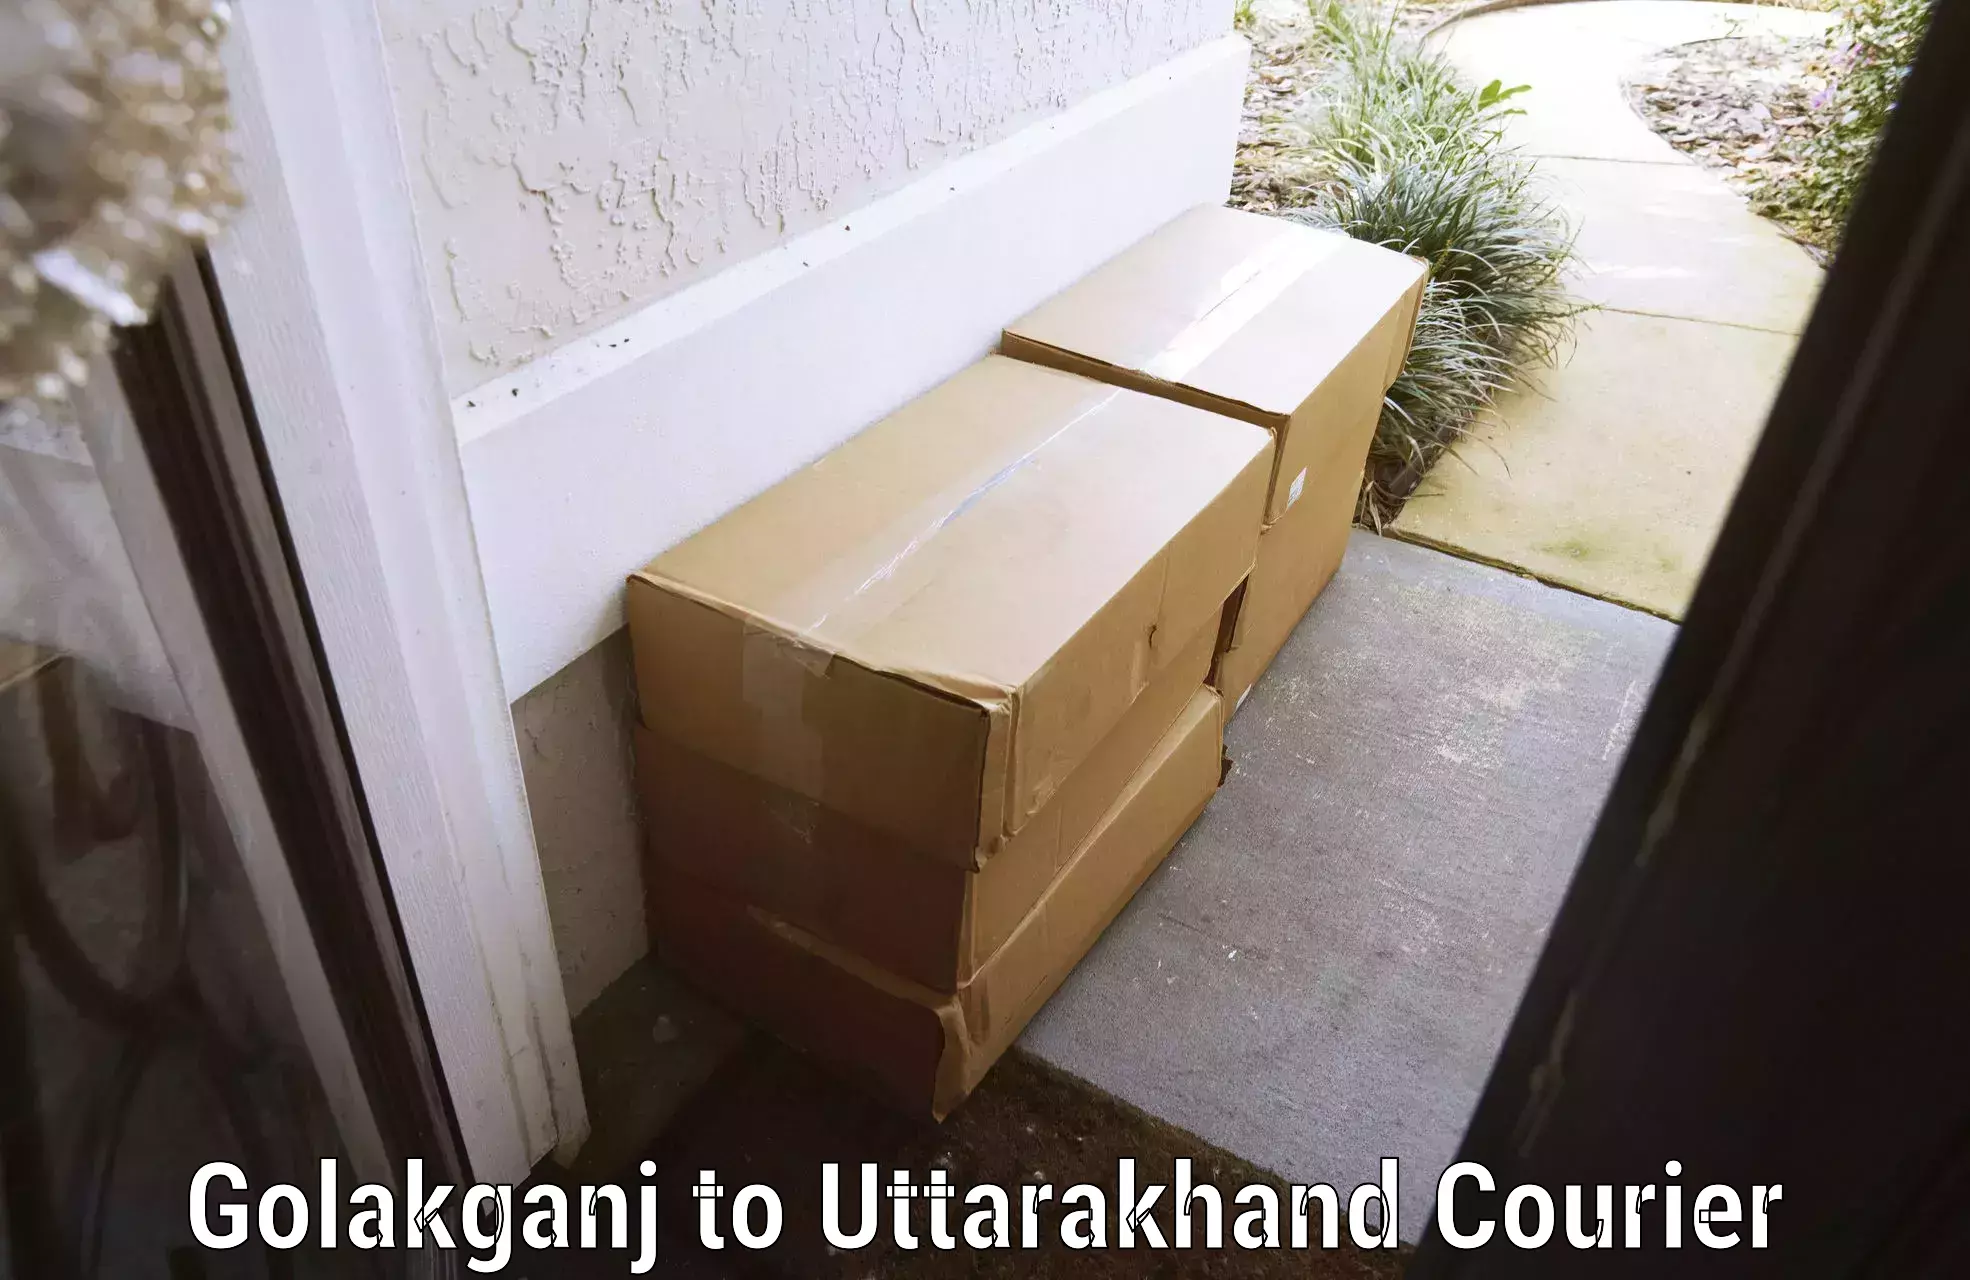 Luggage shipment tracking Golakganj to Gopeshwar